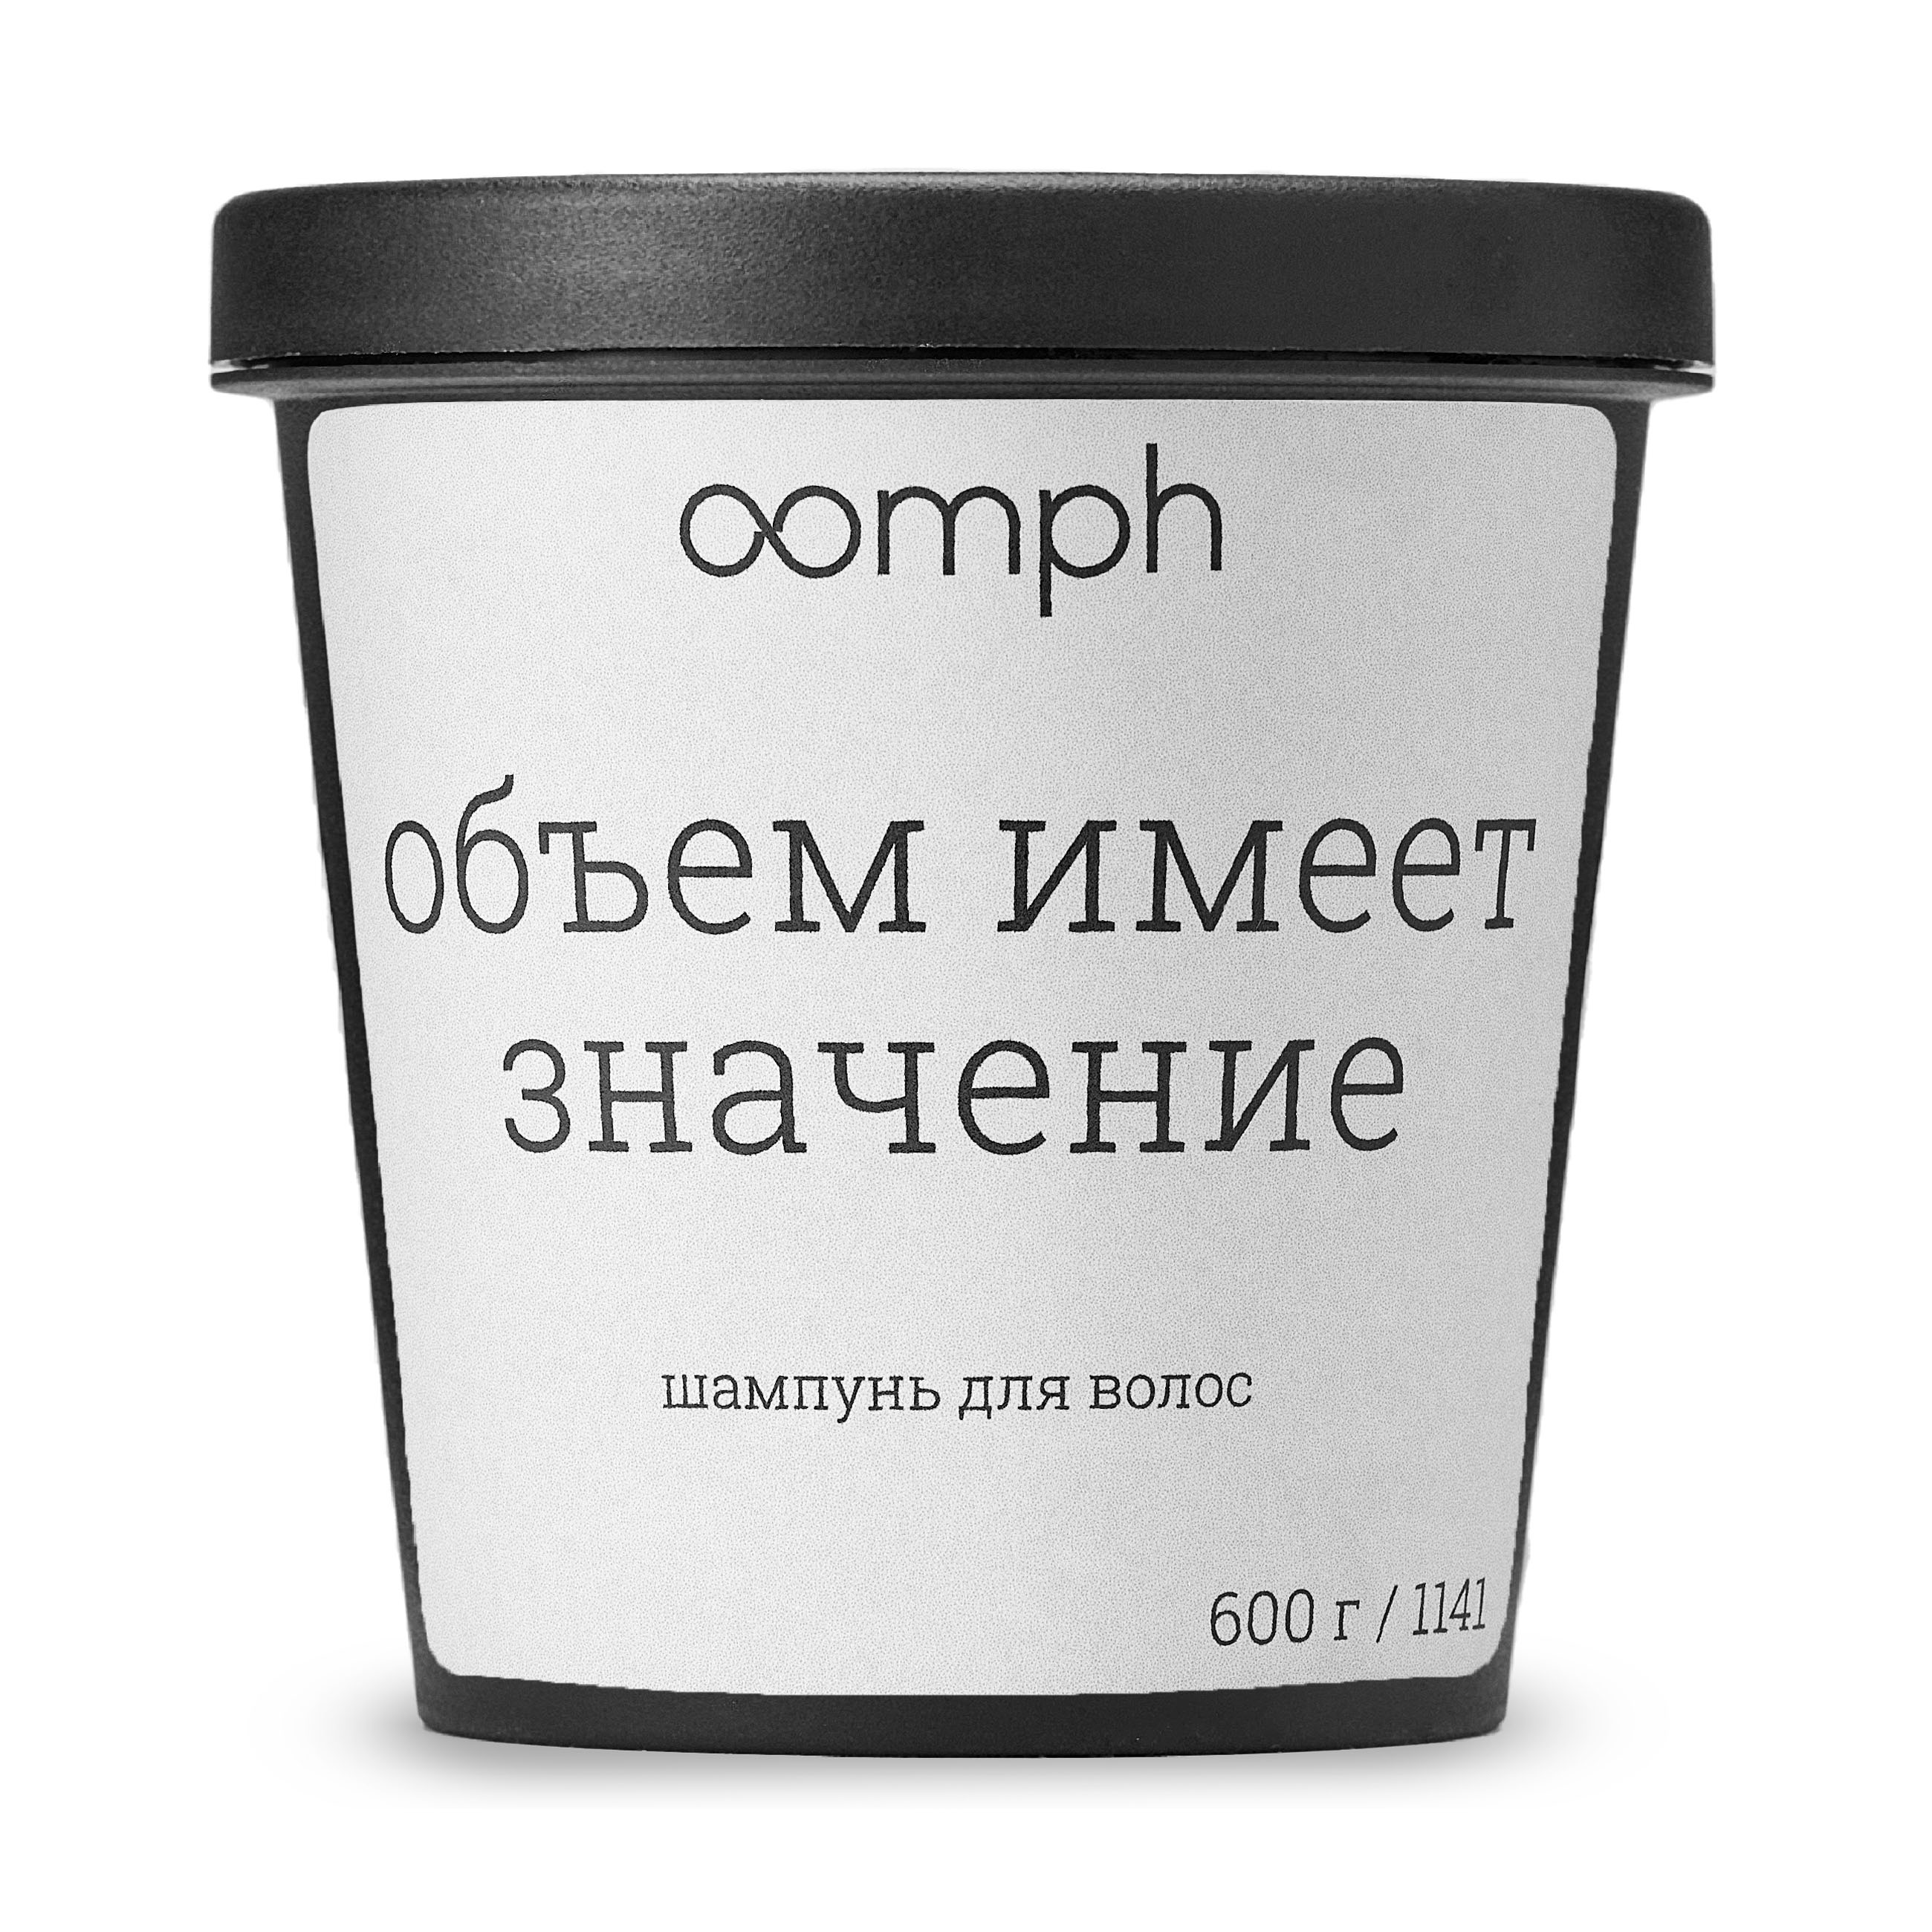 Шампунь для волос OOMPH Объем имеет значение 600г лимонов